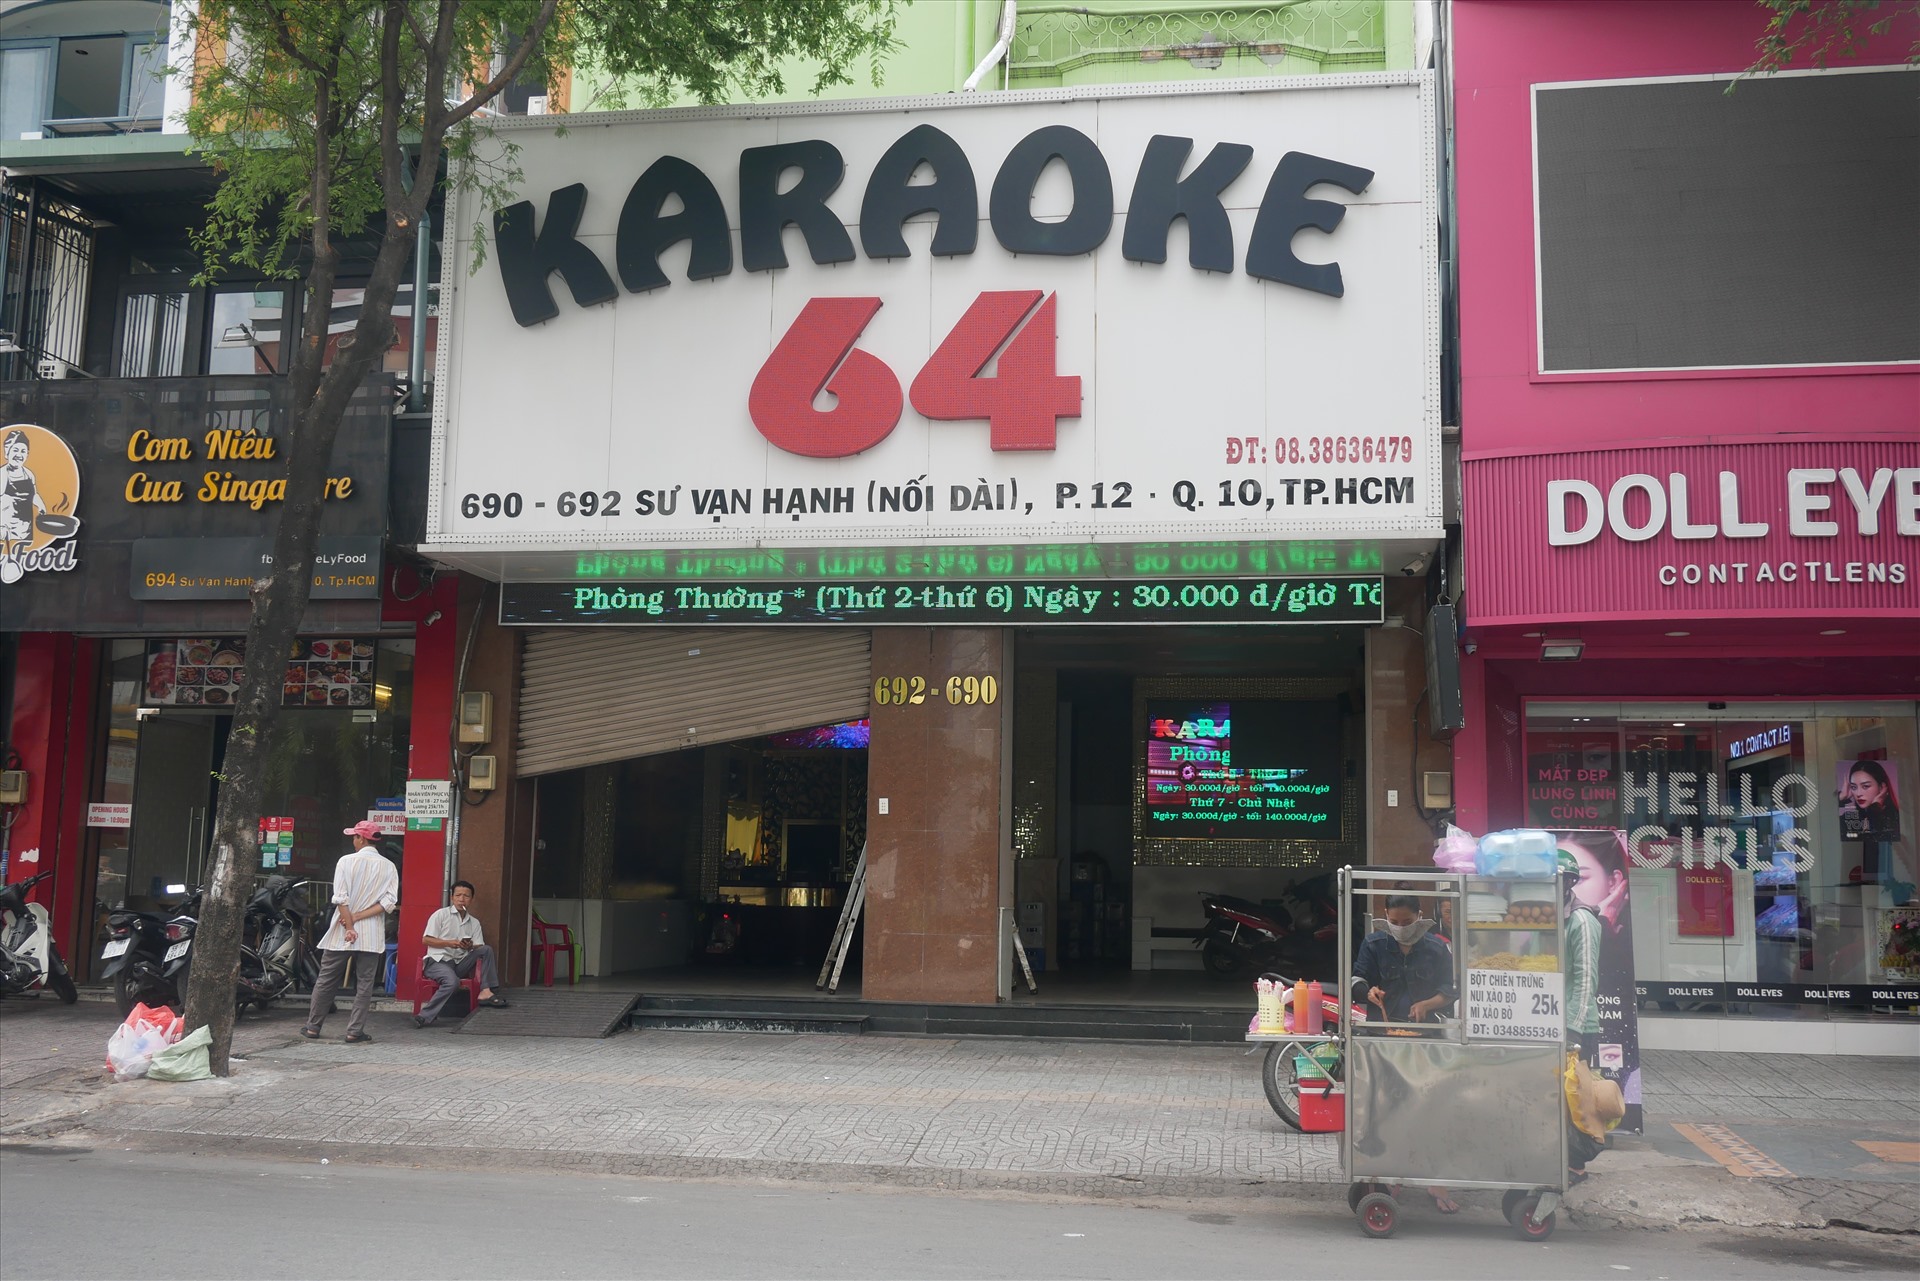 Sáng 9/6, phát biểu kết luận cuộc họp Thường trực Chính phủ về phòng, chống dịch COVID-19, Thủ tướng Nguyễn Xuân Phúc đồng ý cho phép các cơ sở kinh doanh dịch vụ karaoke, vũ trường hoạt động trở lại. Ghi nhận của PV vào chiều cùng ngày nhiều quán karaoke đã mở cửa